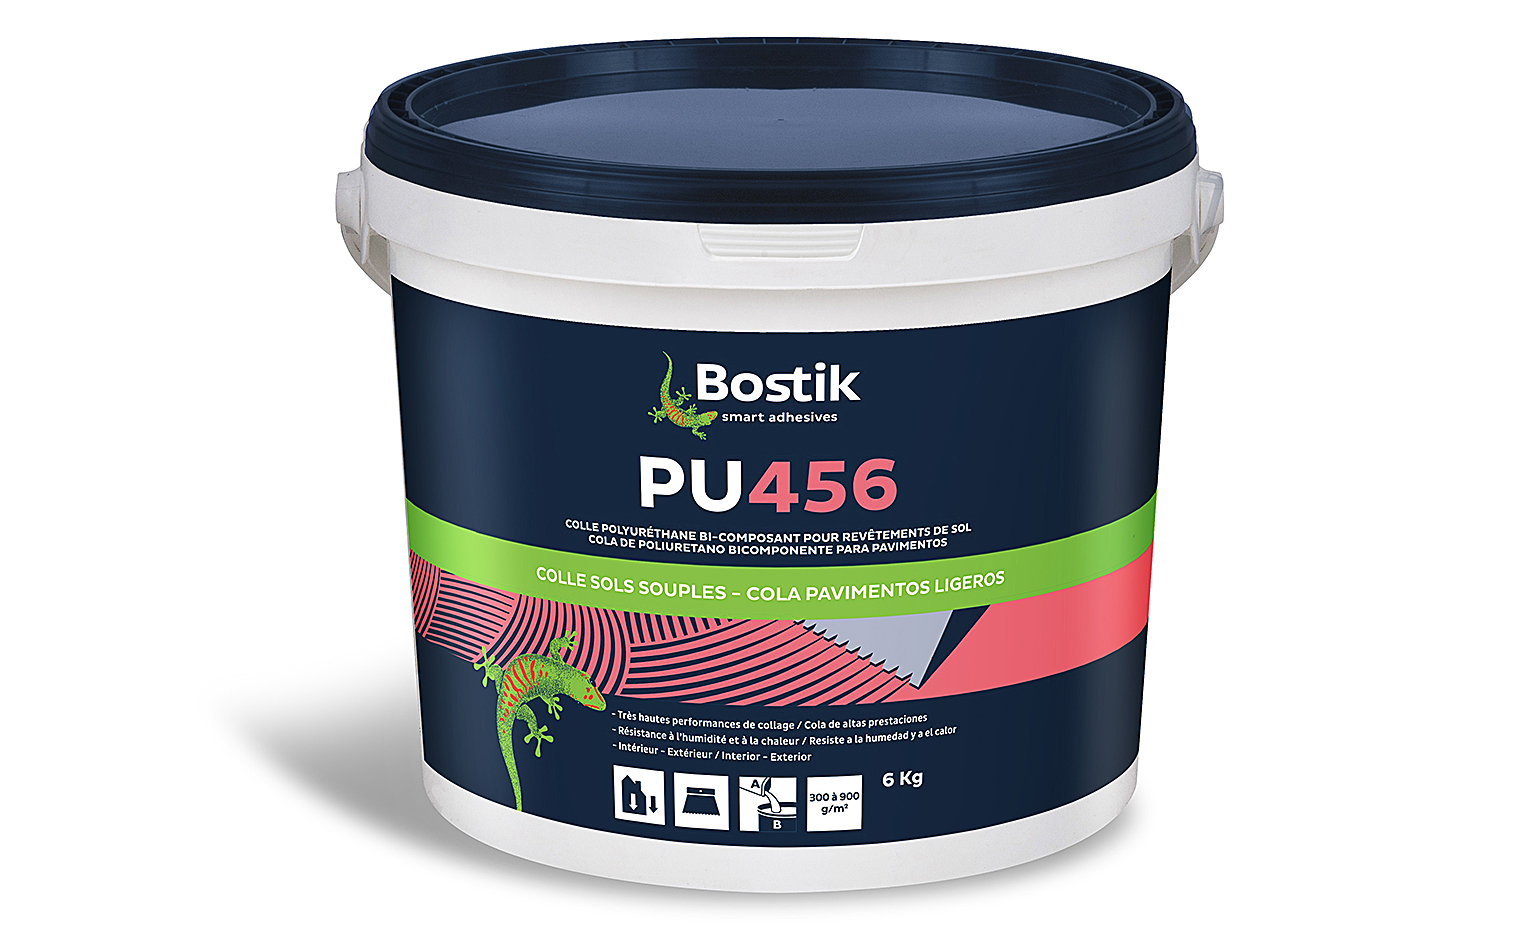  Bostik EPONAPU456 STIX P956 2K, pour sols Accessoire Vinyle, 6.00 kg